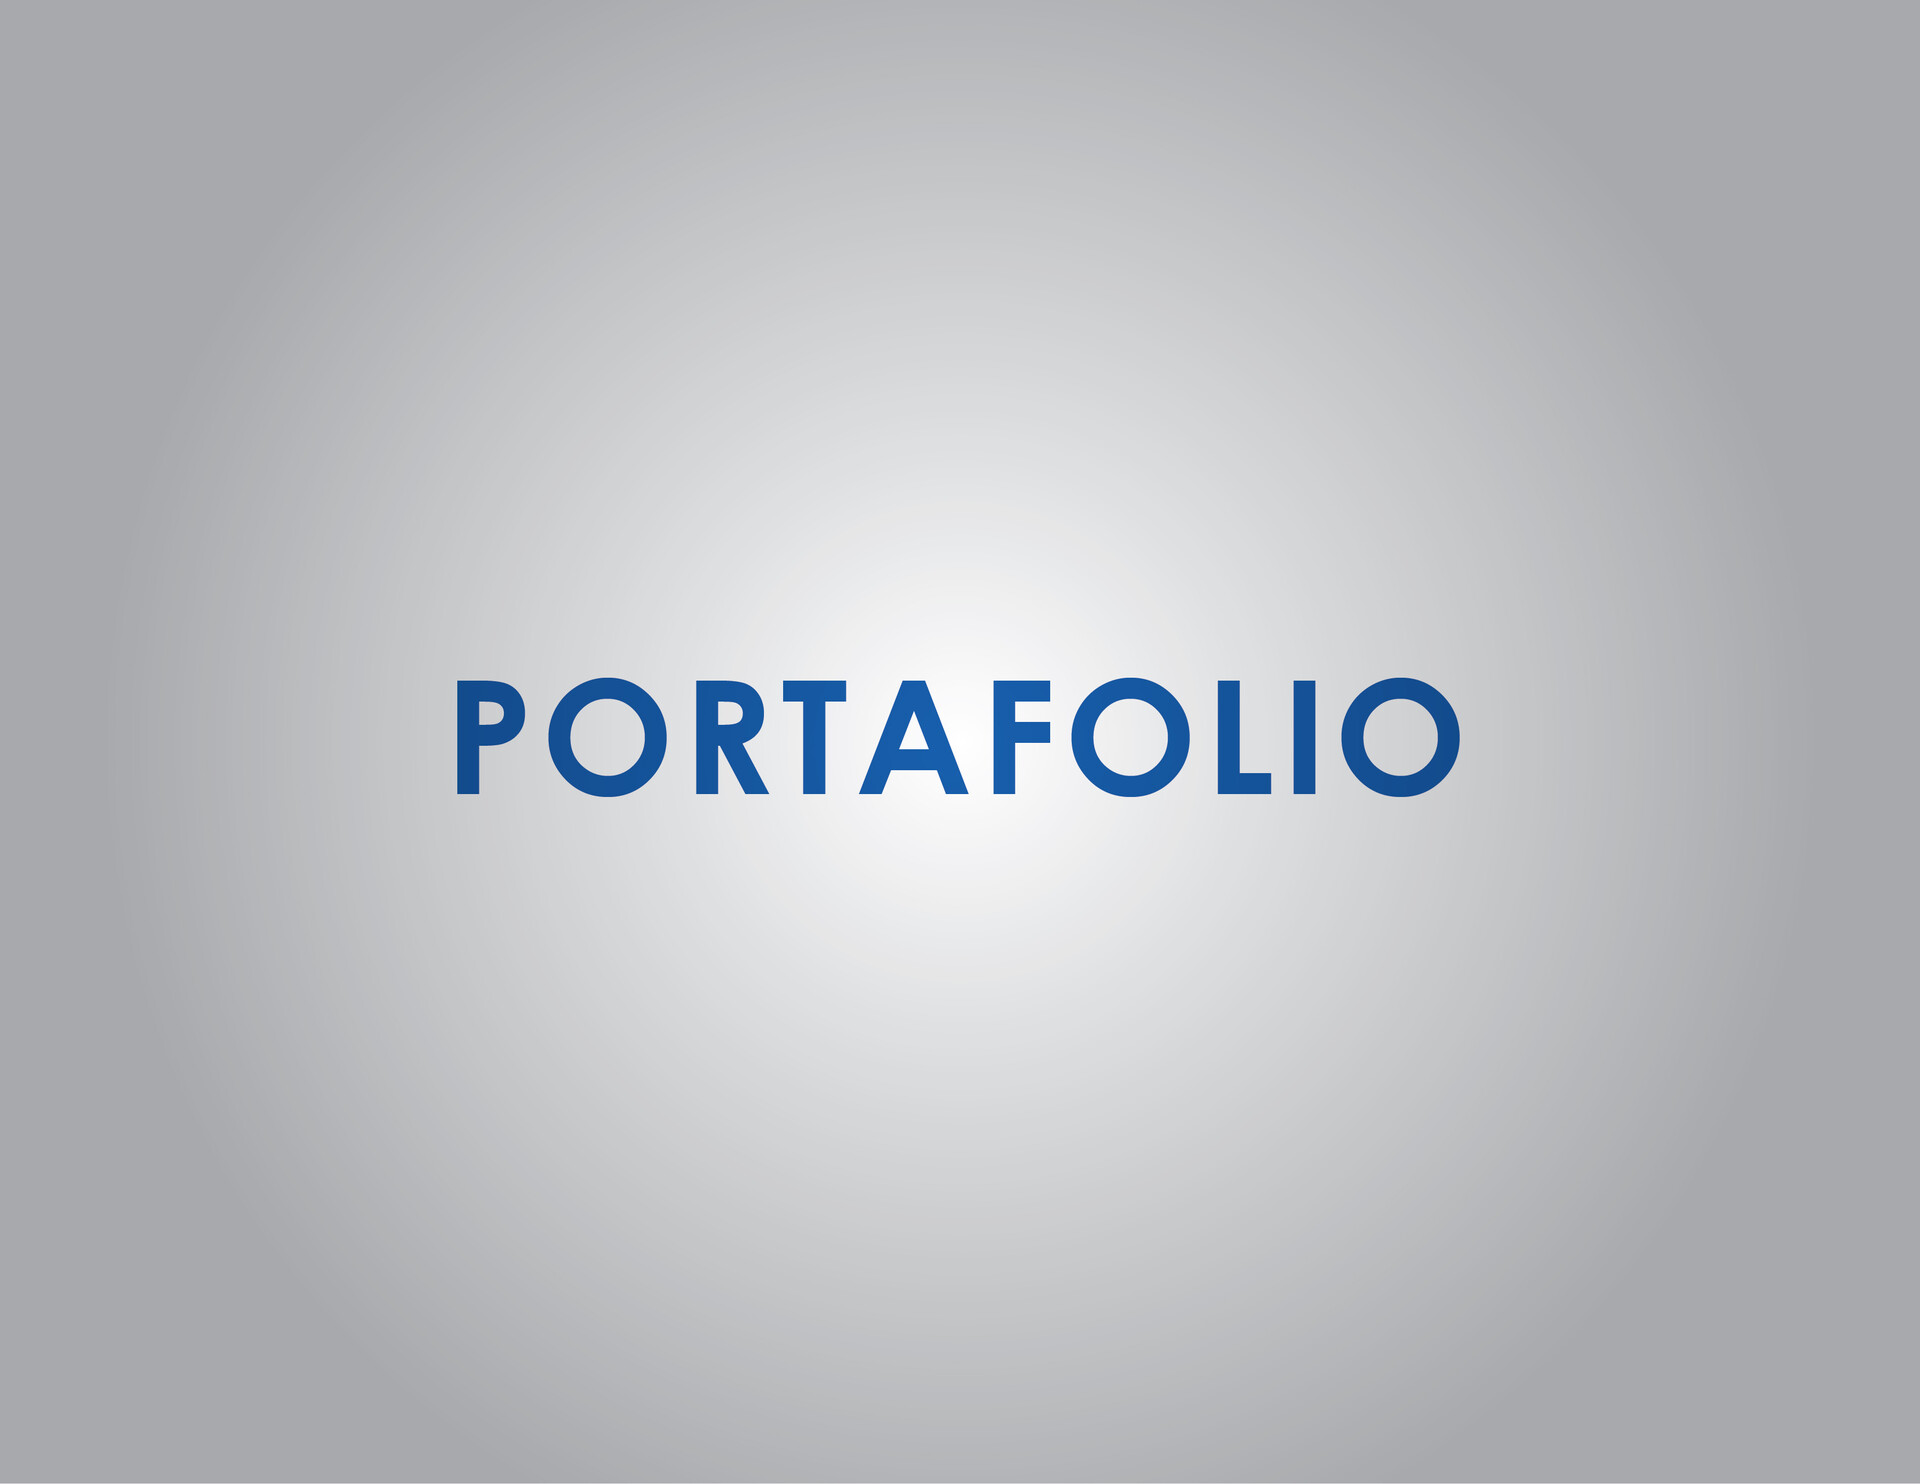 ArtStation - Portafolio